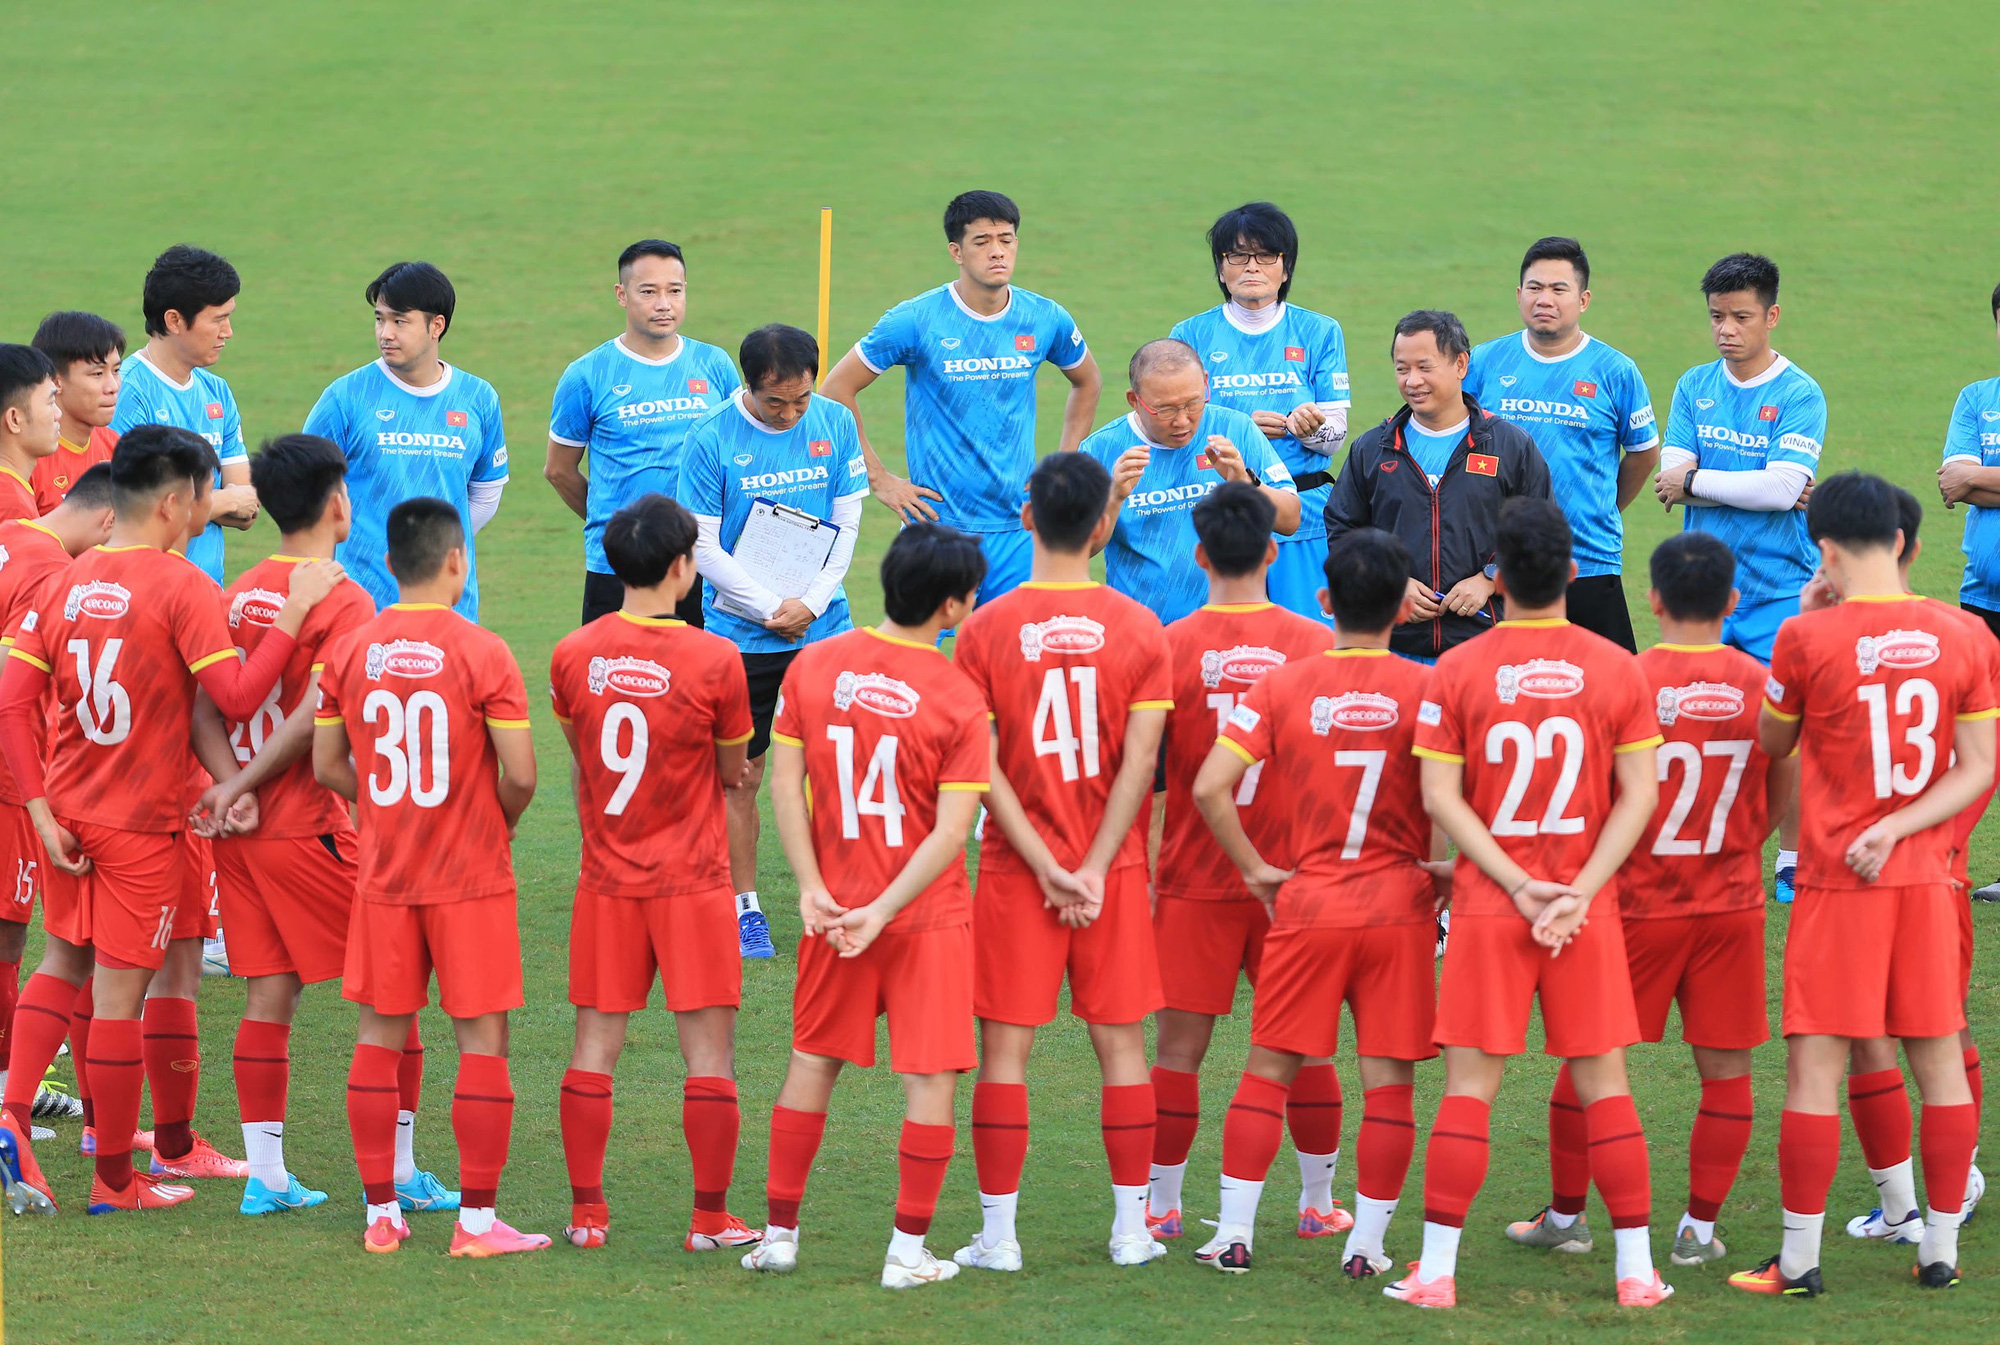 Cầu thủ tuyển Việt Nam hào hứng khi trở thành thủ môn bất đắc dĩ - Ảnh 1.